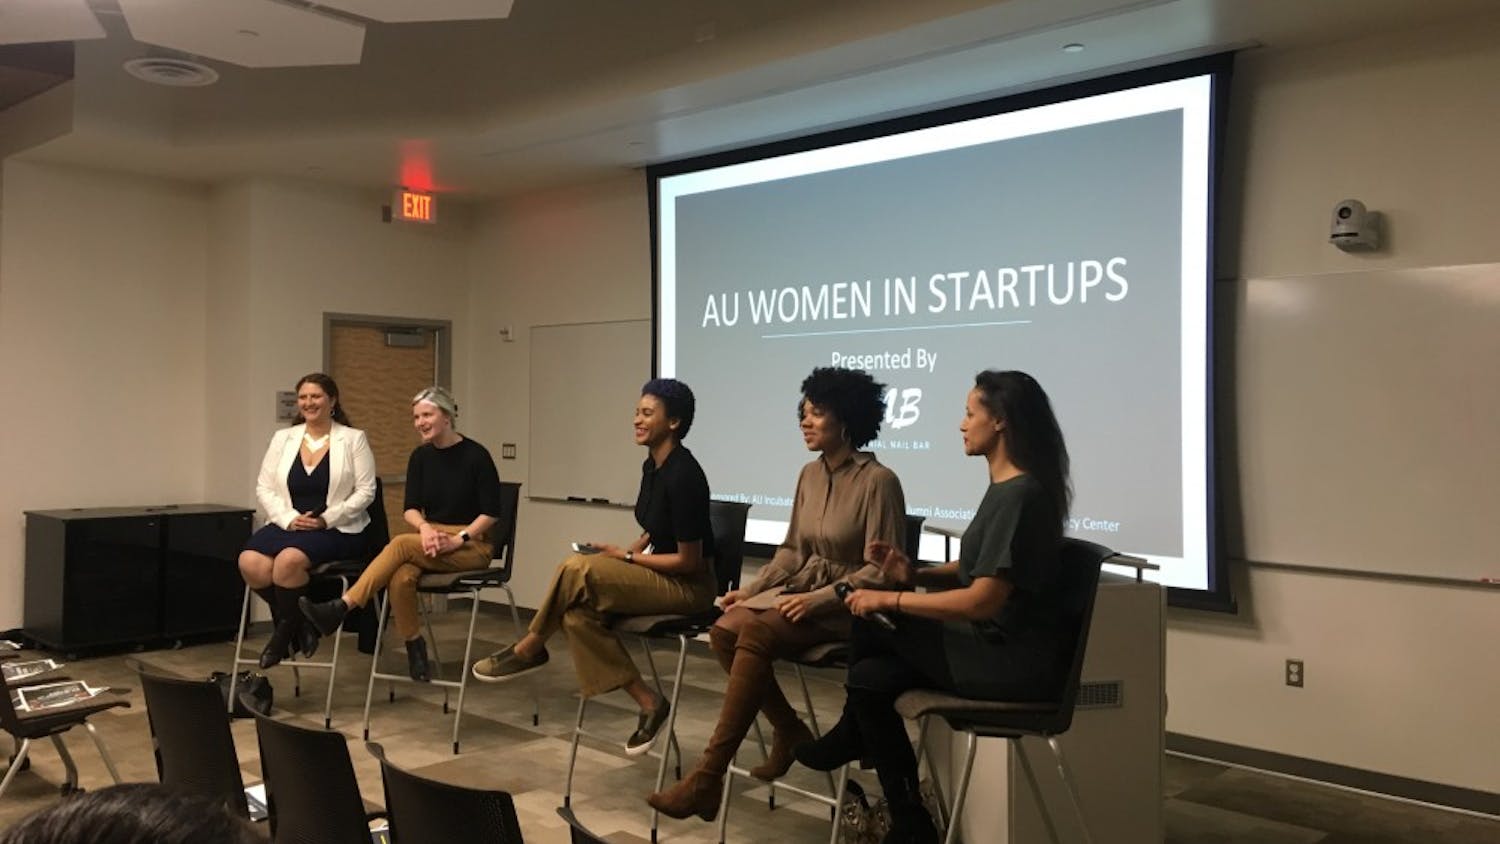 AU Women in Startups